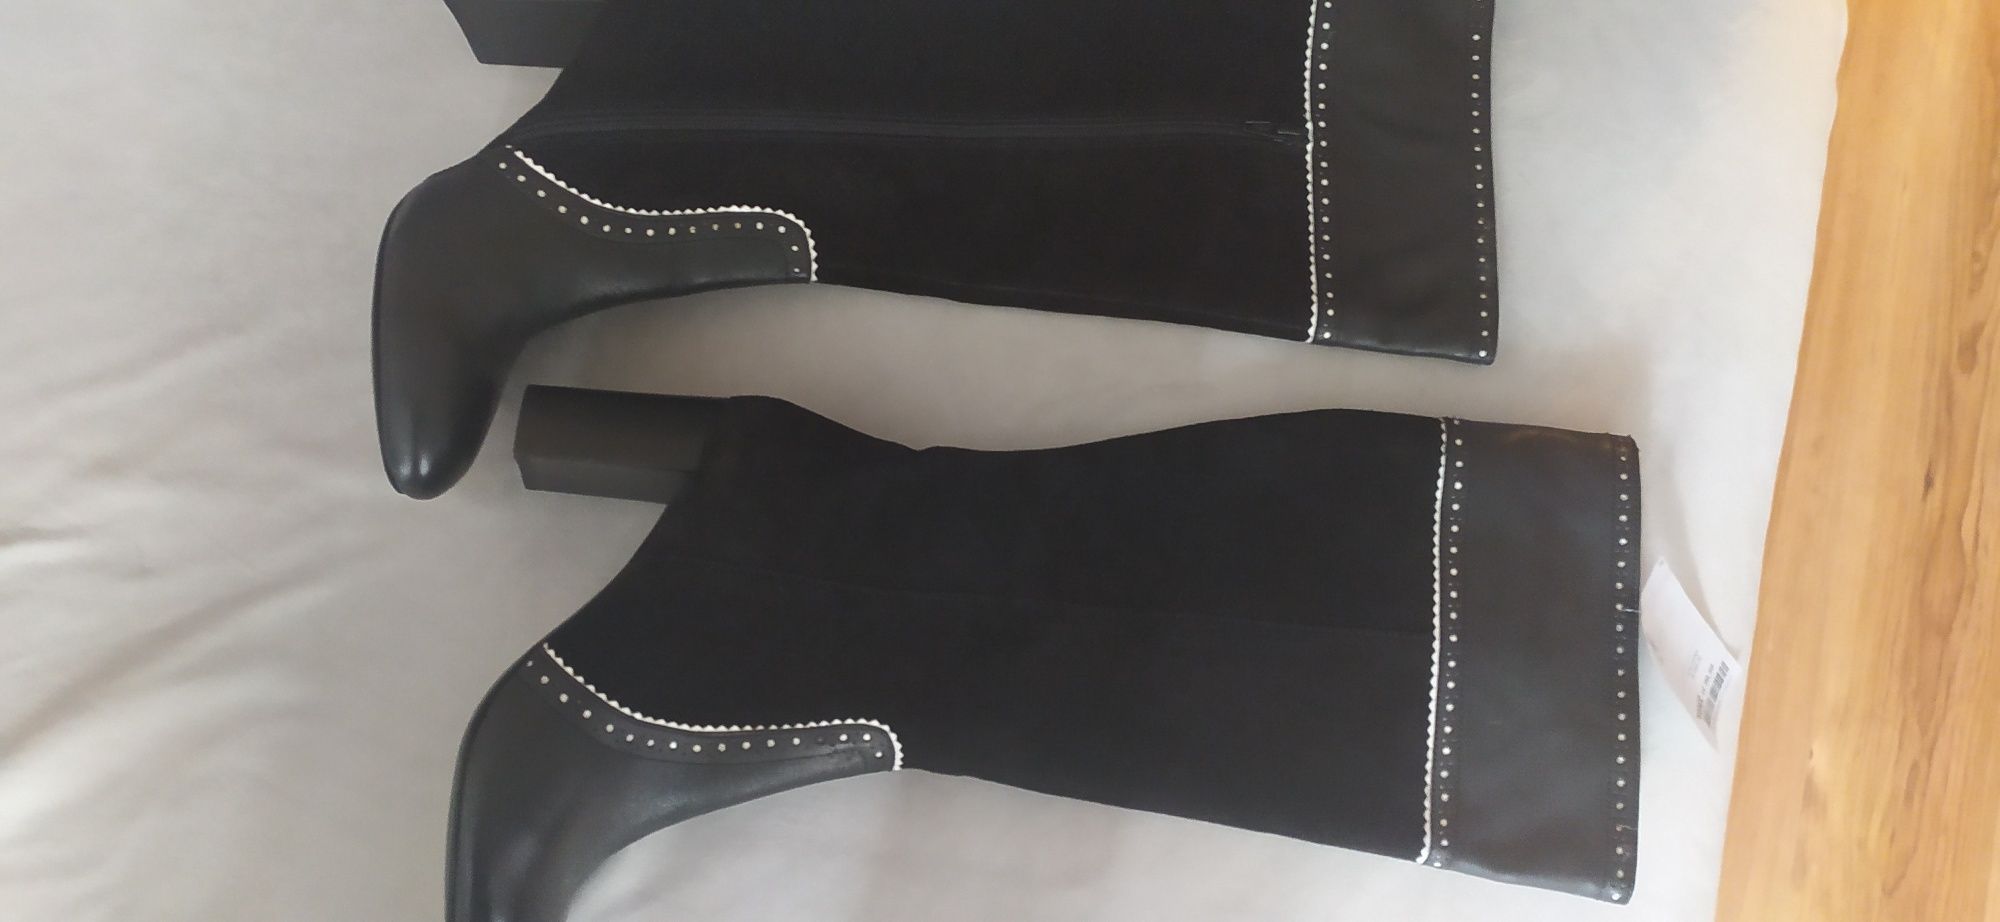 Nowe wygodne kozaki buty czarne skóra naturalna roz. 40 z TK Maxx.